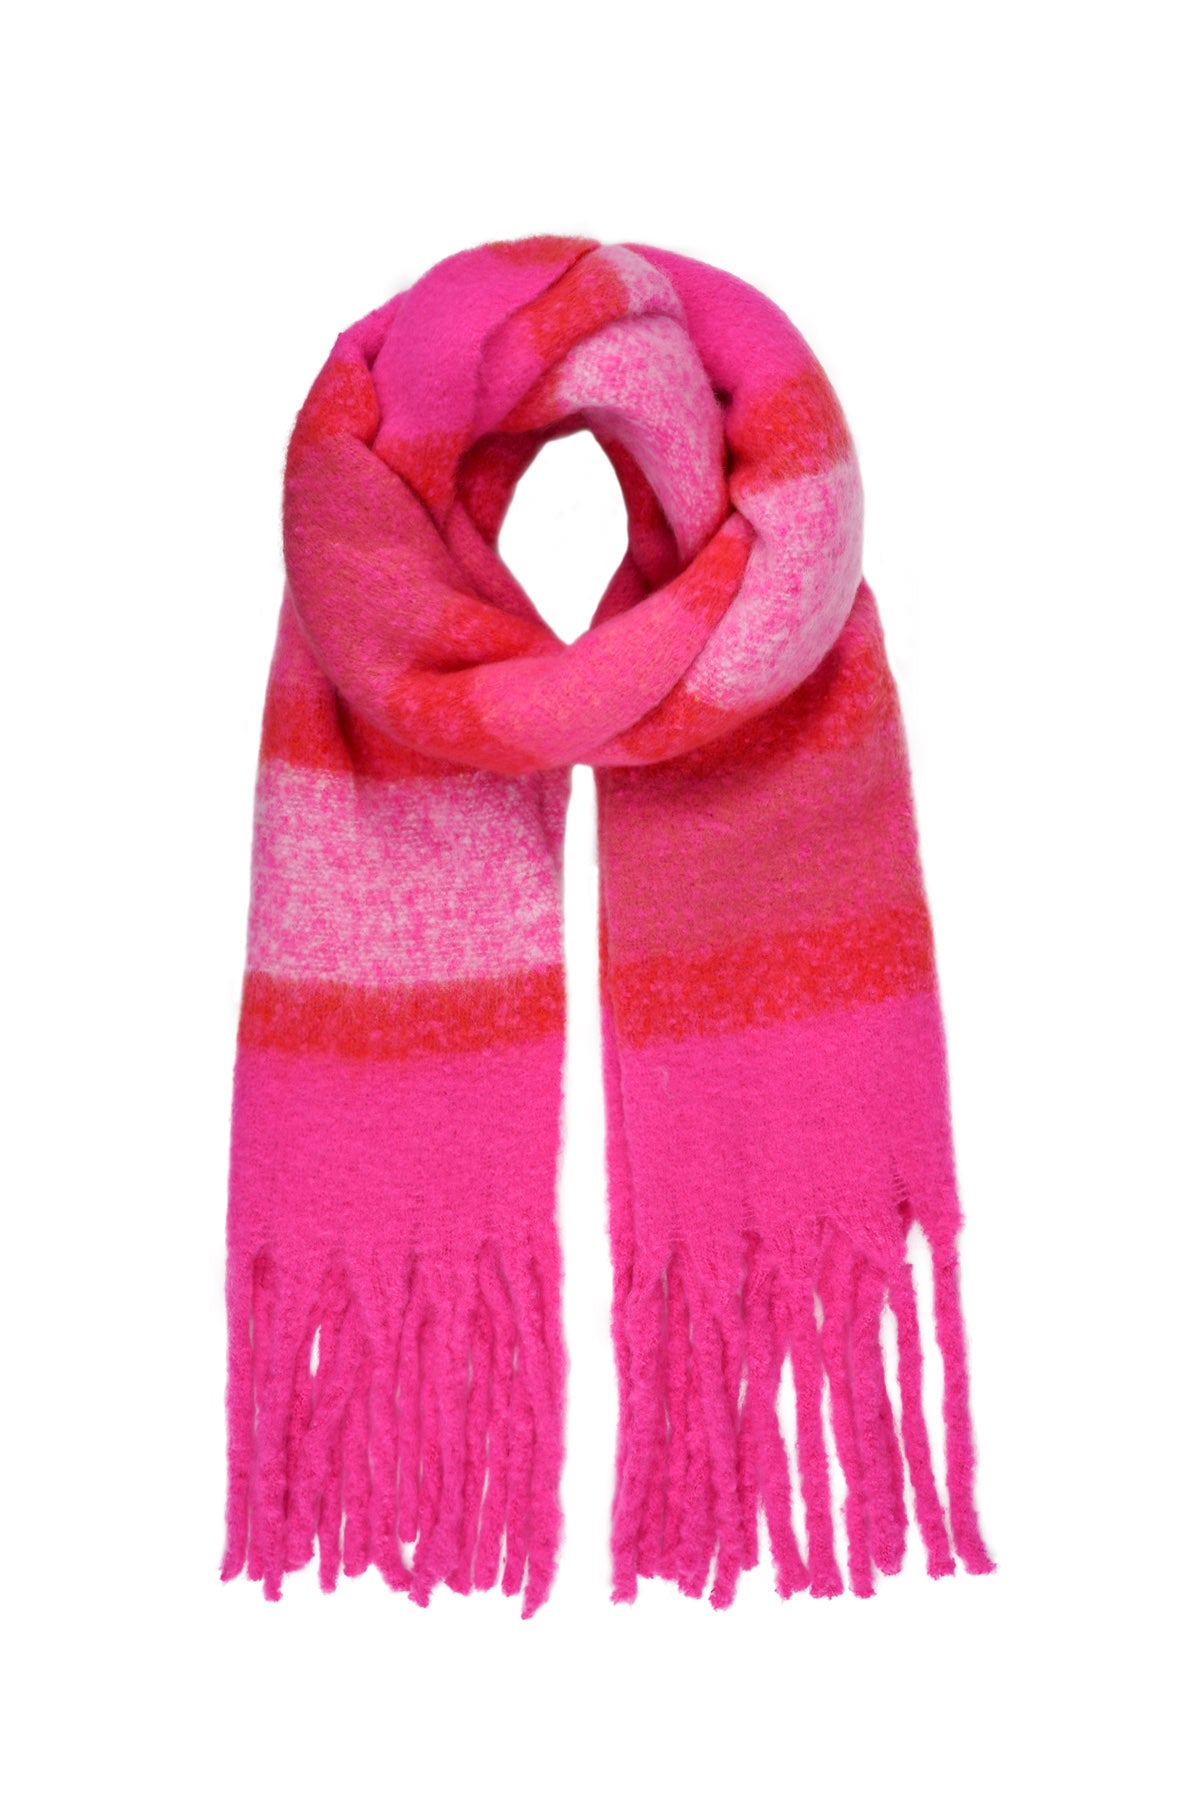 sjaal roze met rood